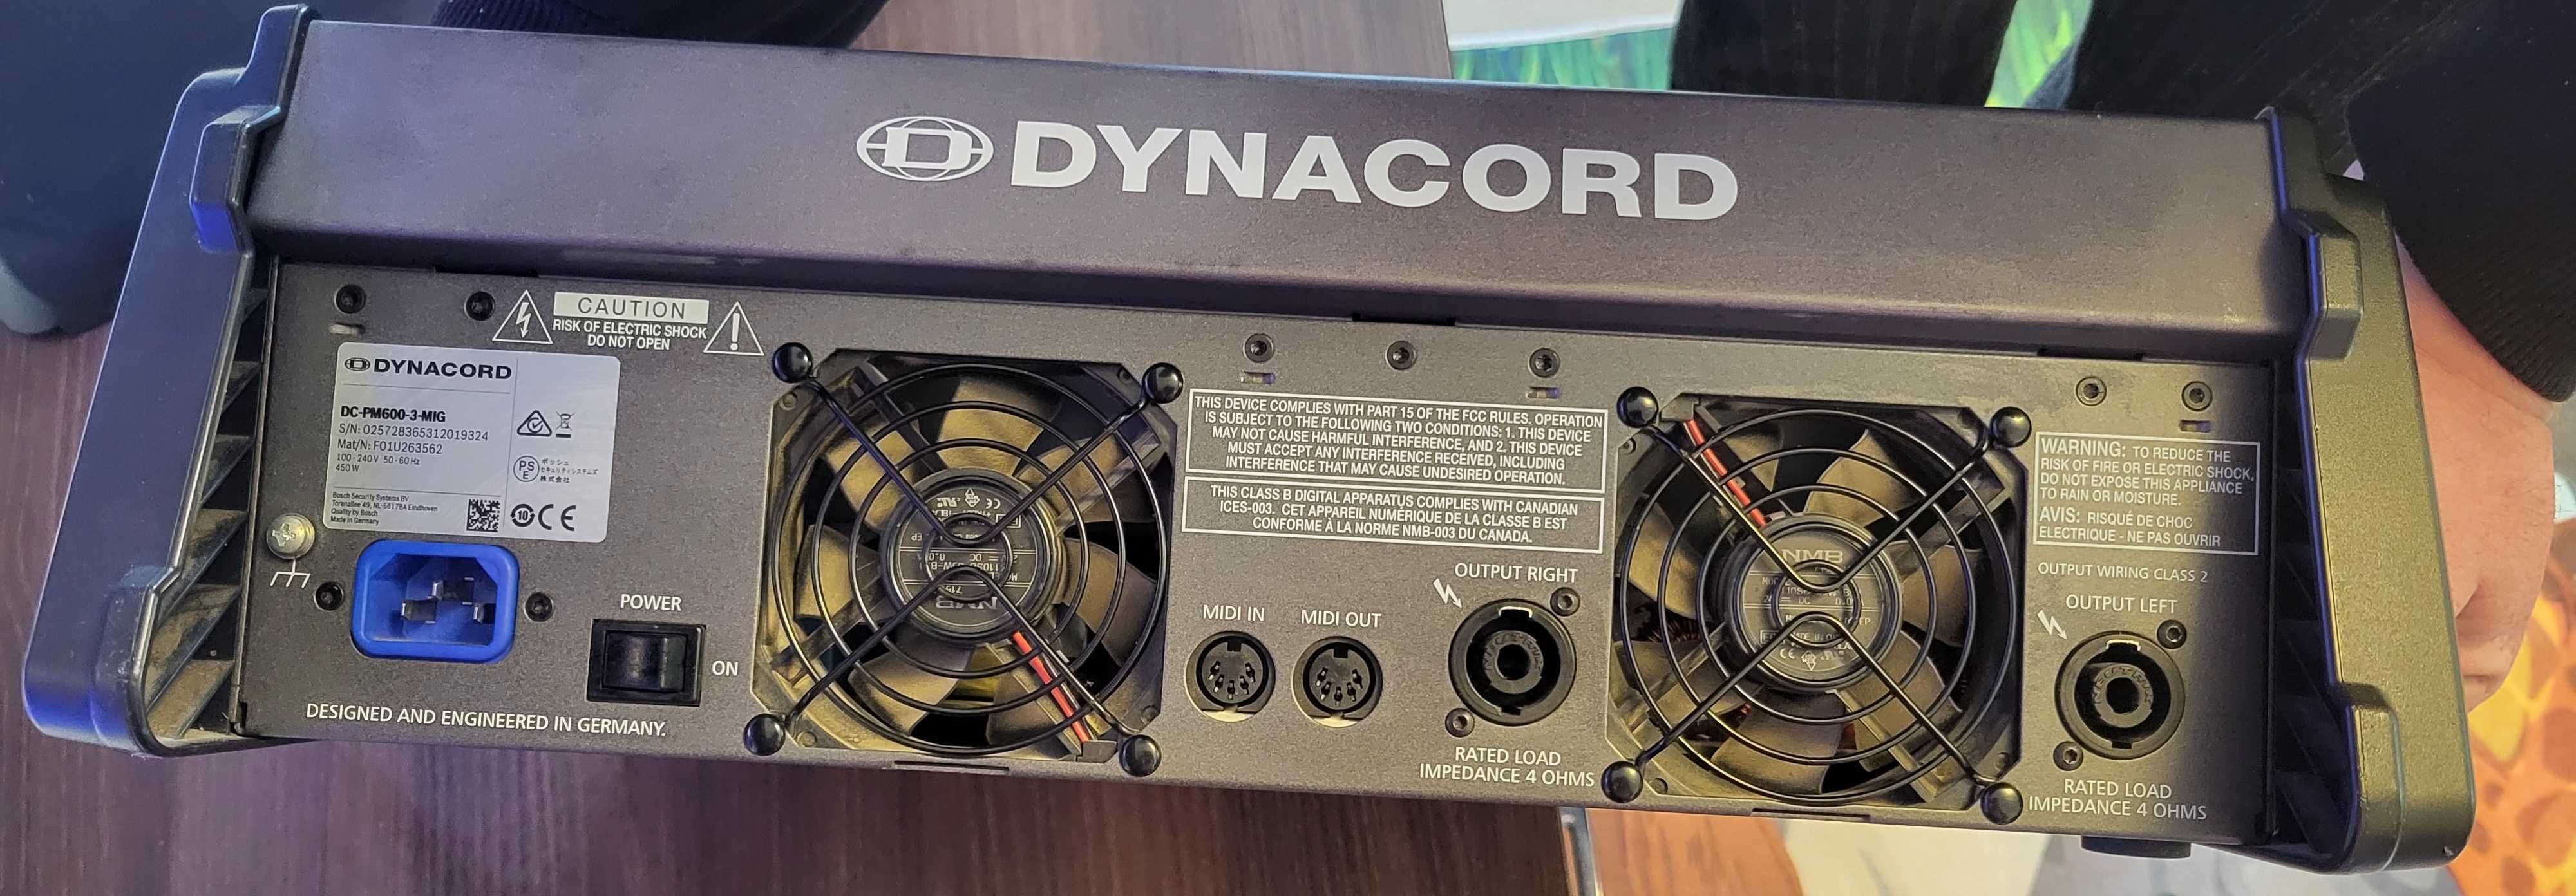 Mixer Dynacord Powermate 603